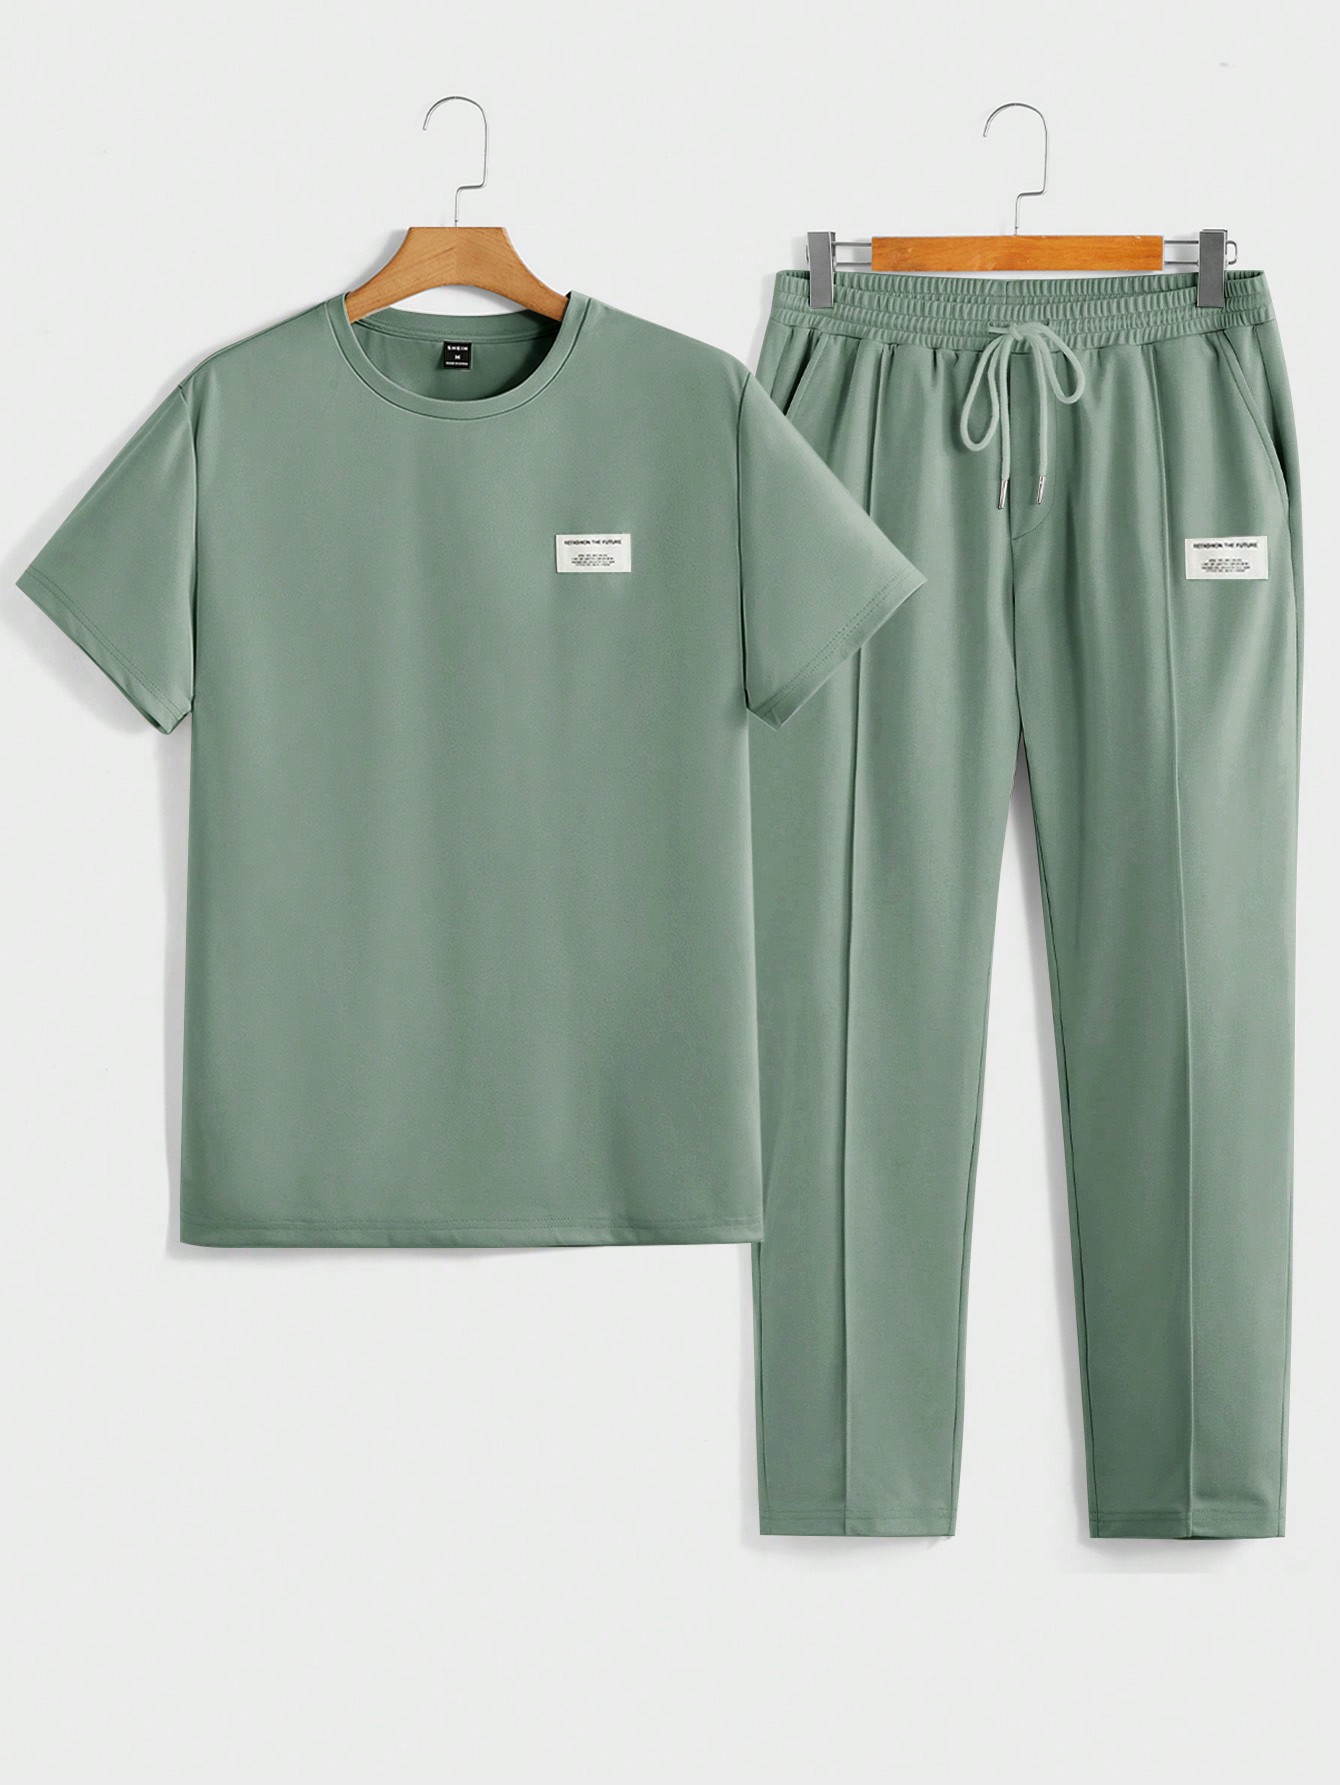 Мужская футболка с короткими рукавами и трикотажными повседневными брюками Manfinity Homme с надписью и нашивкой, зеленый